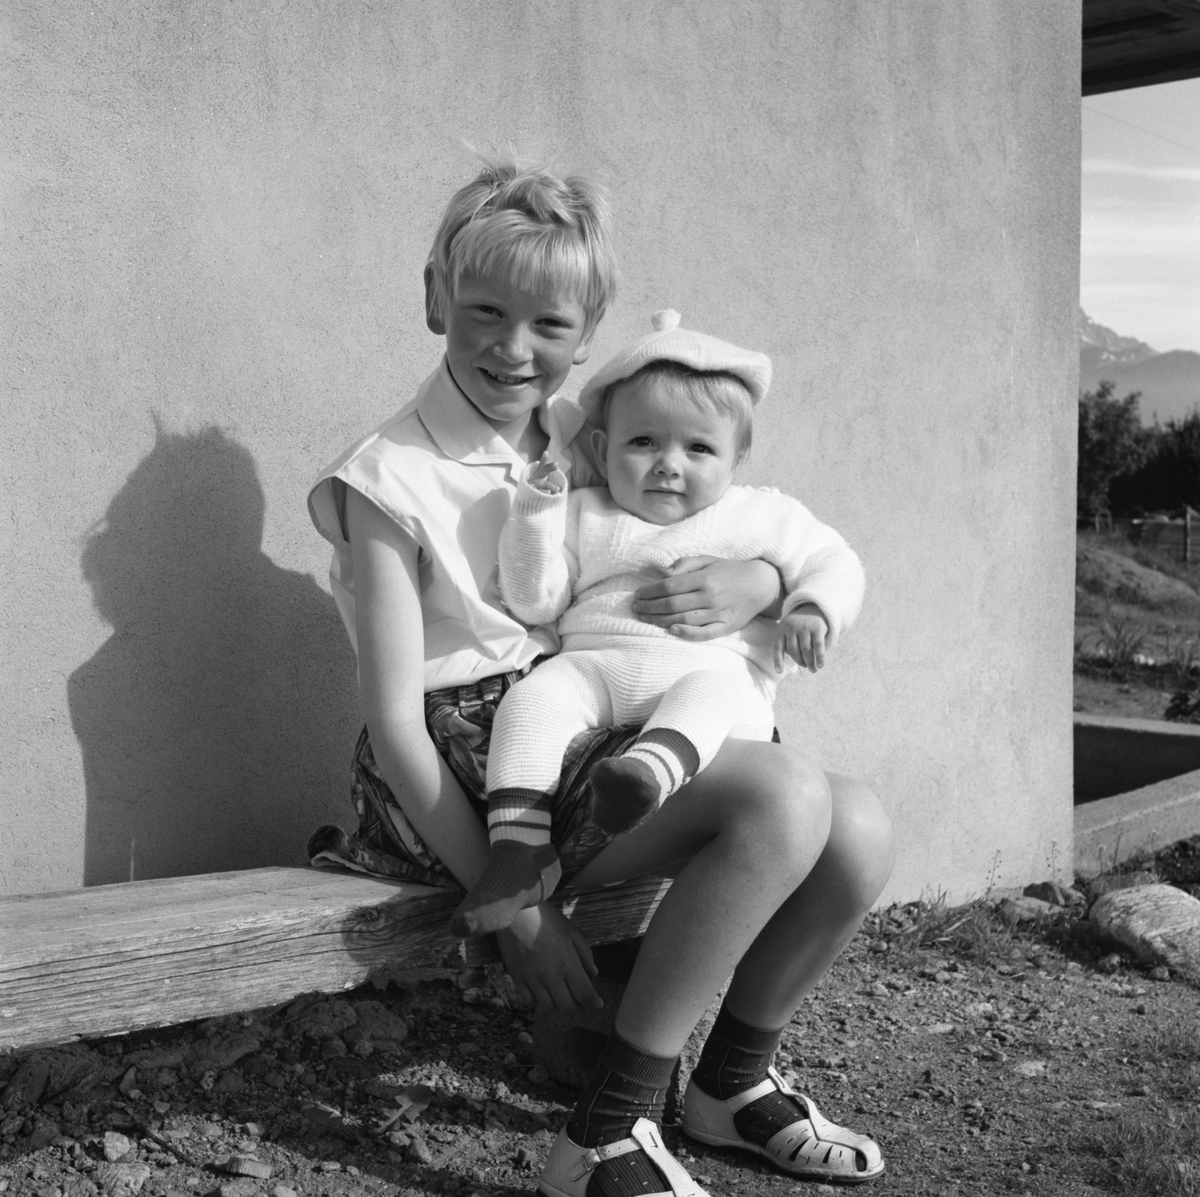 Portrettfotografi av ei jente med en baby på fanget utenfor et hus. Bjørg og Frode?